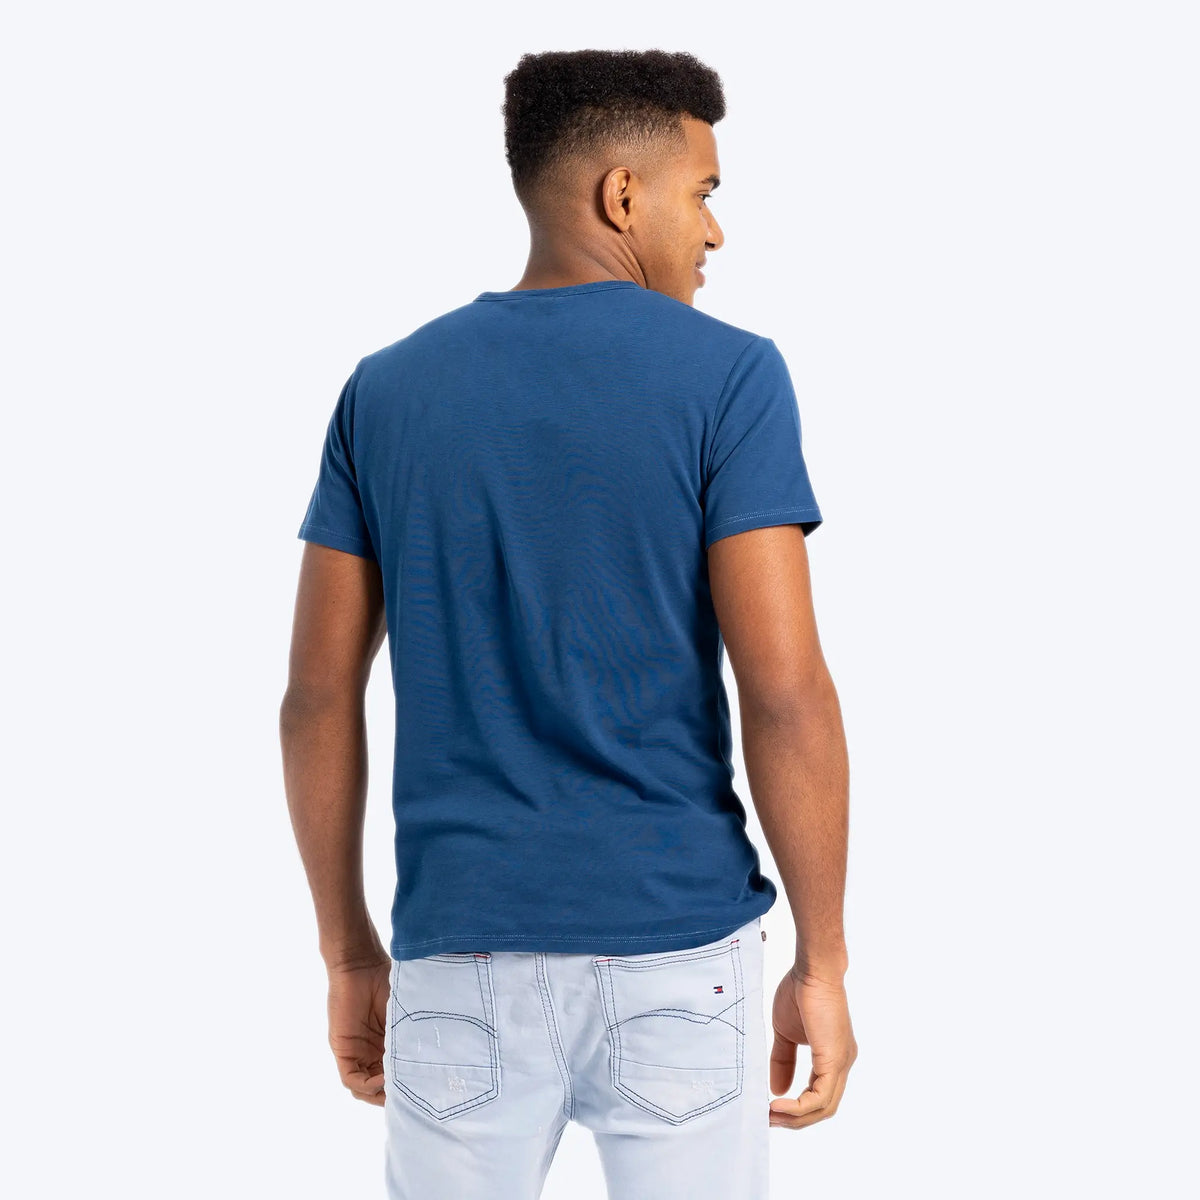 mens ultra soft tshirt crew neck color natural blue